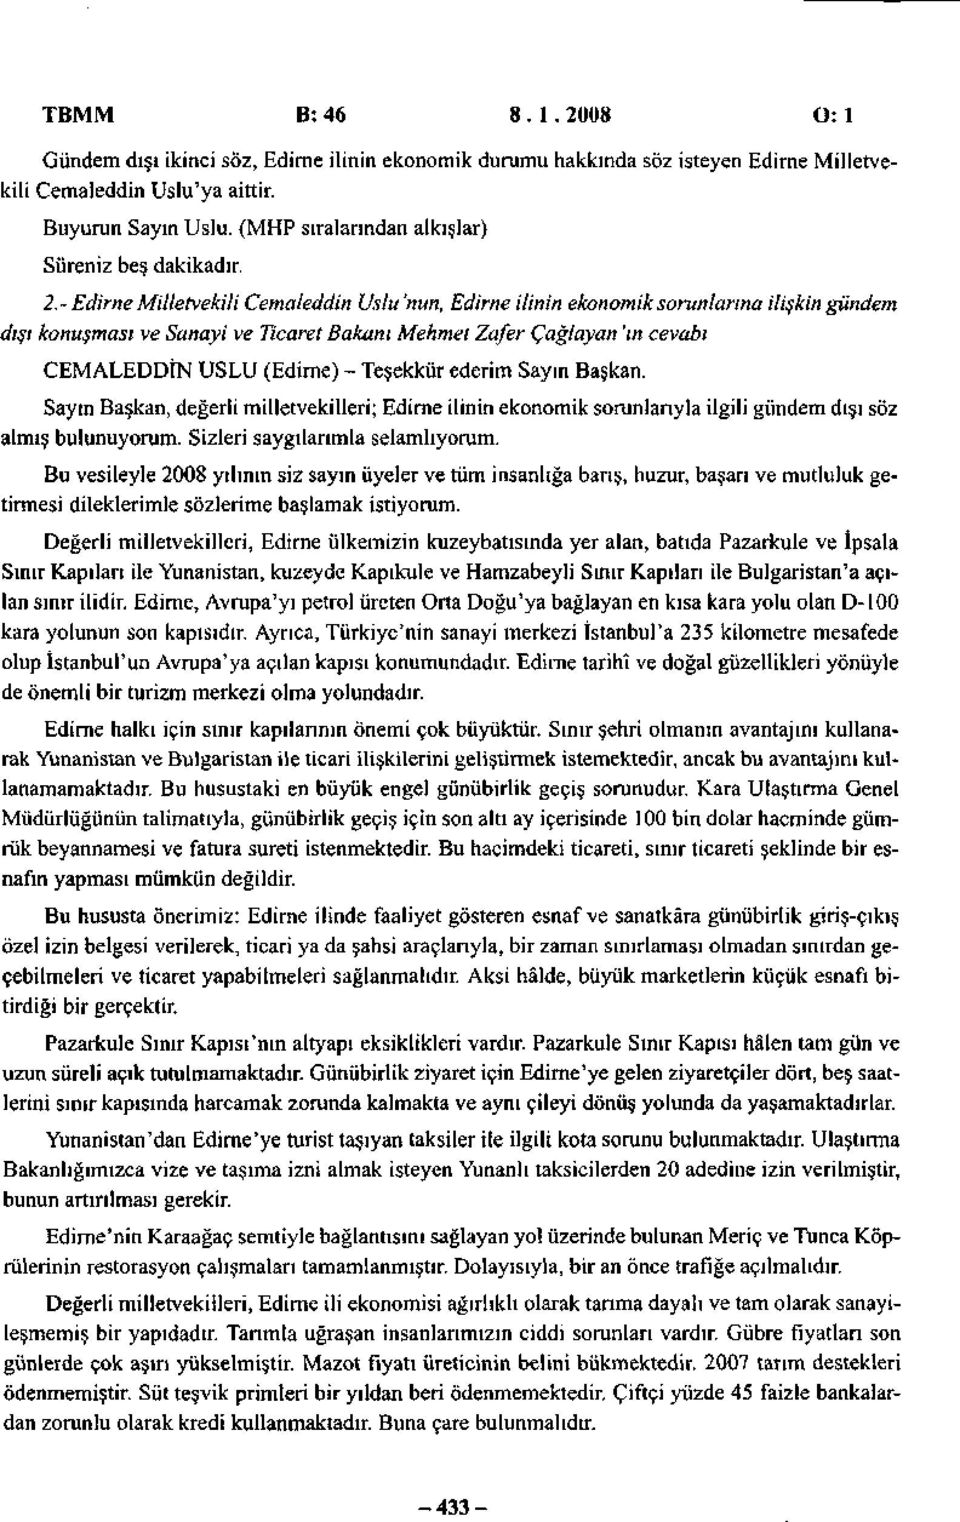 - Edirne Milletvekili Cemaleddin Uslu 'nun, Edirne ilinin ekonomik sorunlarına ilişkin gündem dışı konuşması ve Sanayi ve Ticaret Bakanı Mehmet Zafer Çağlayan 'in cevabı CEMALEDDİN USLU (Edirne) -